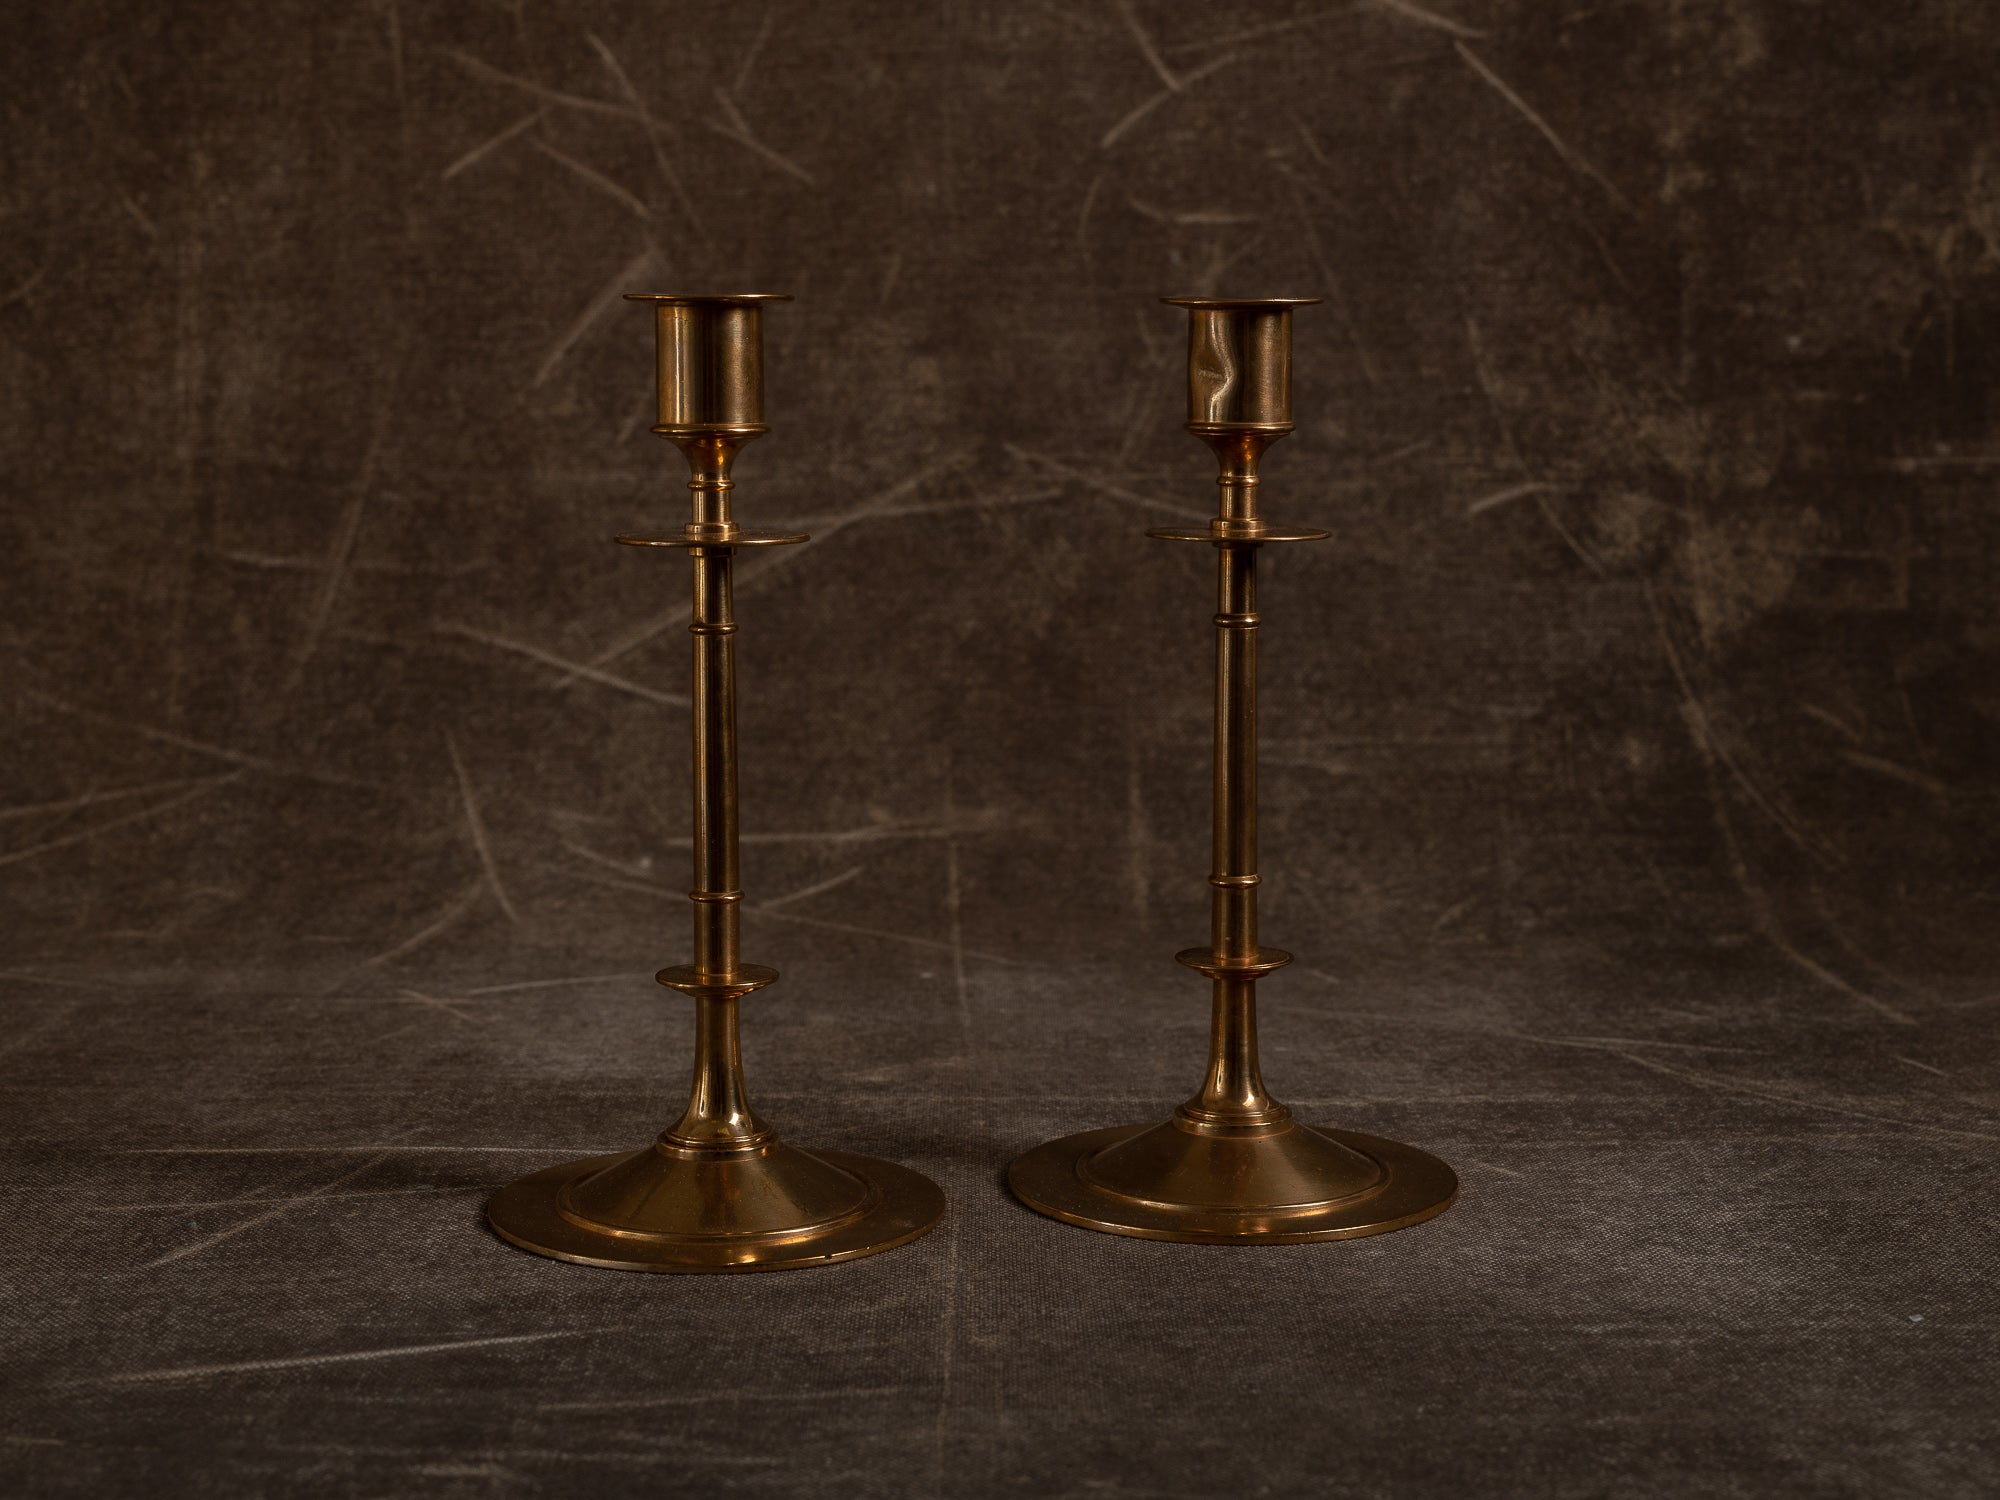 Paire de flambeaux modèle 61 par Gusum Bruk, Suède (vers 1900)..Pair of candle holders model 61 by Gusum Bruk, Sweden (circa 1900)